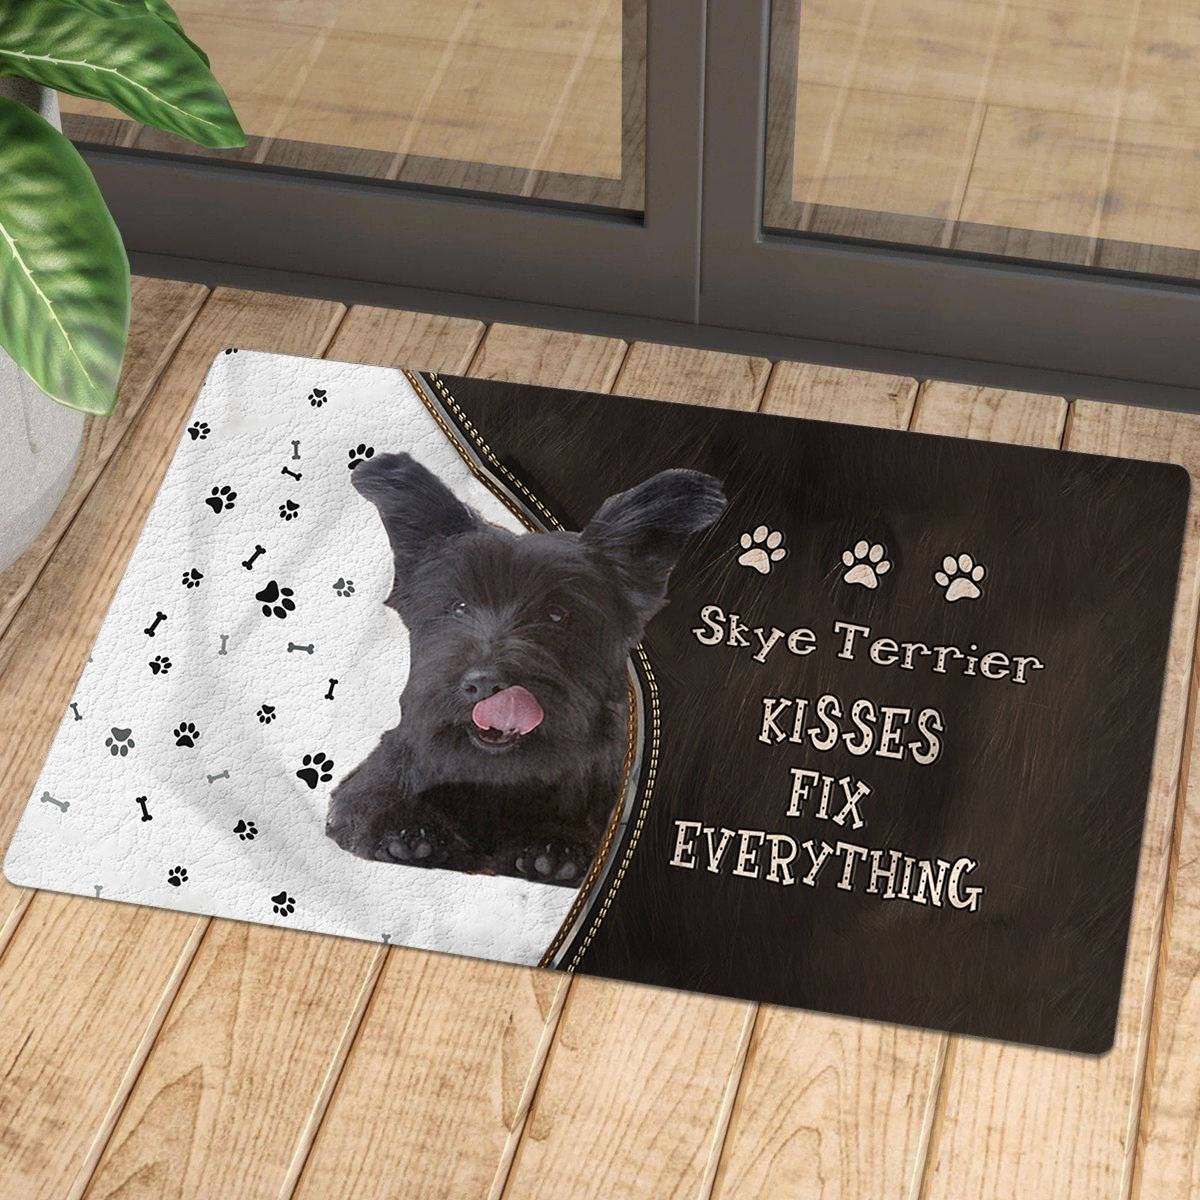 Skye Terrier Kisses Fix Everything Doormat